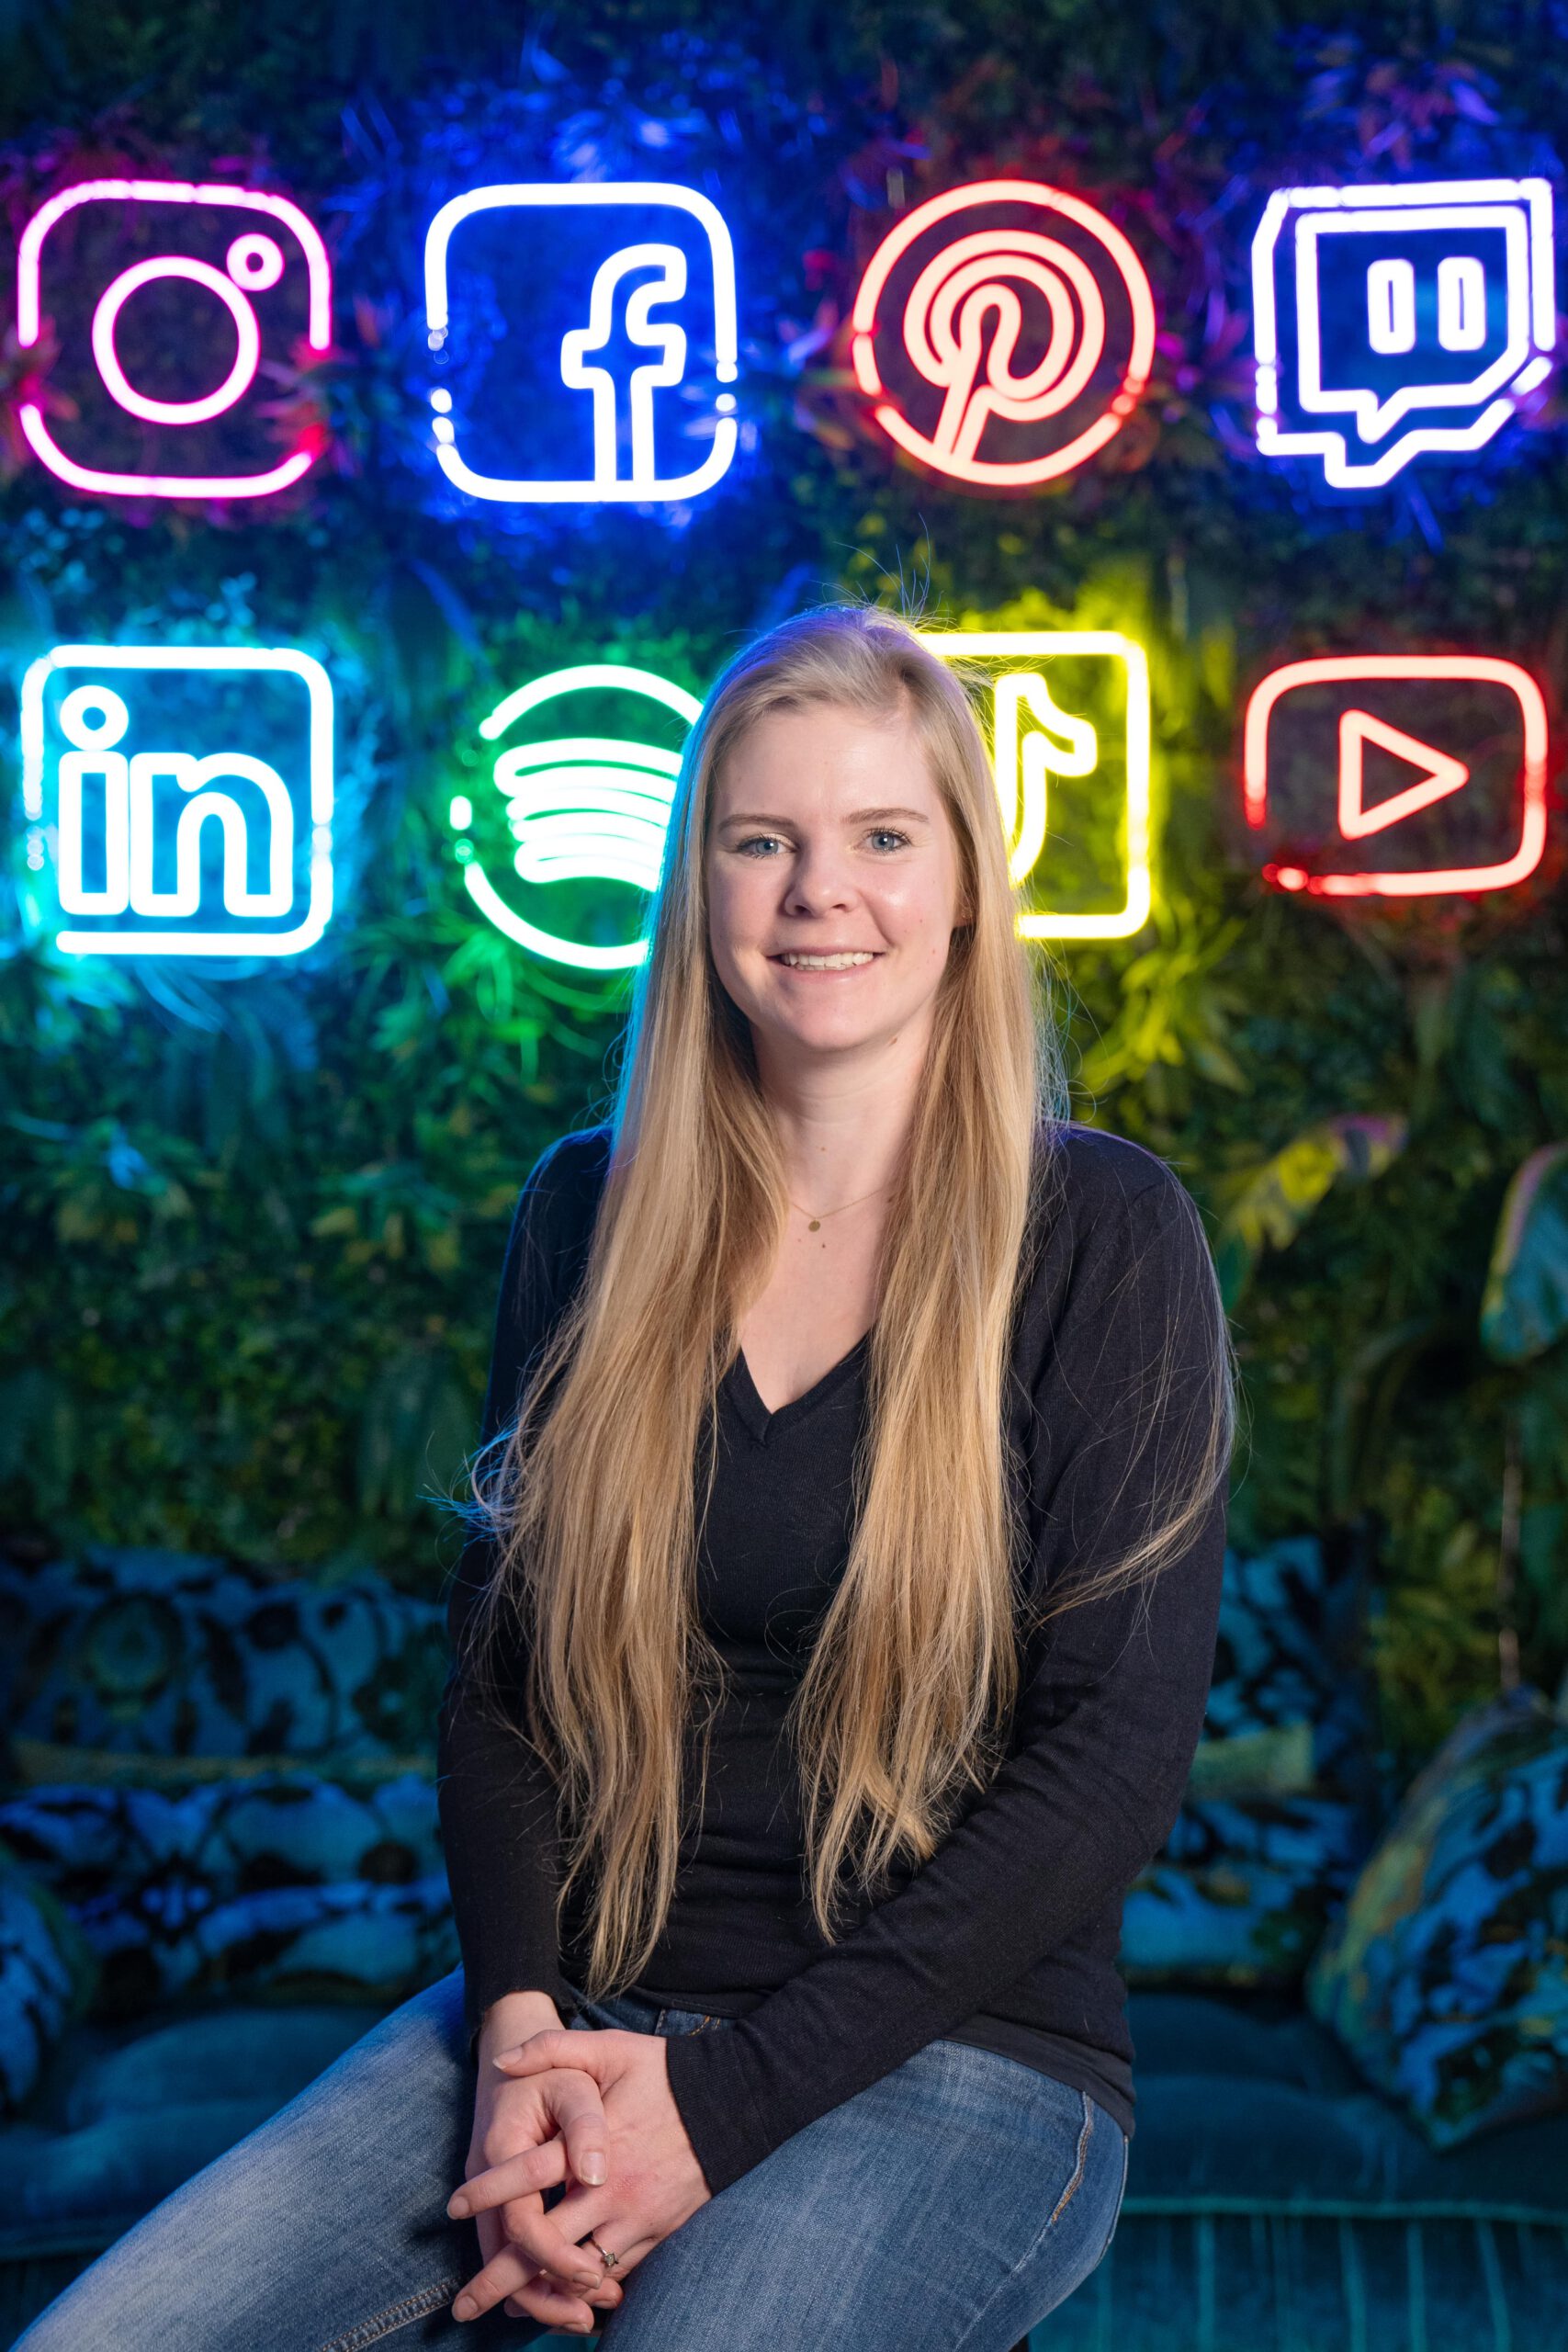 Junge blonde Frau mit sehr langen Haaren vor begrünter Wand mit Neon-Lichtern in Form von Social-Media-Icons